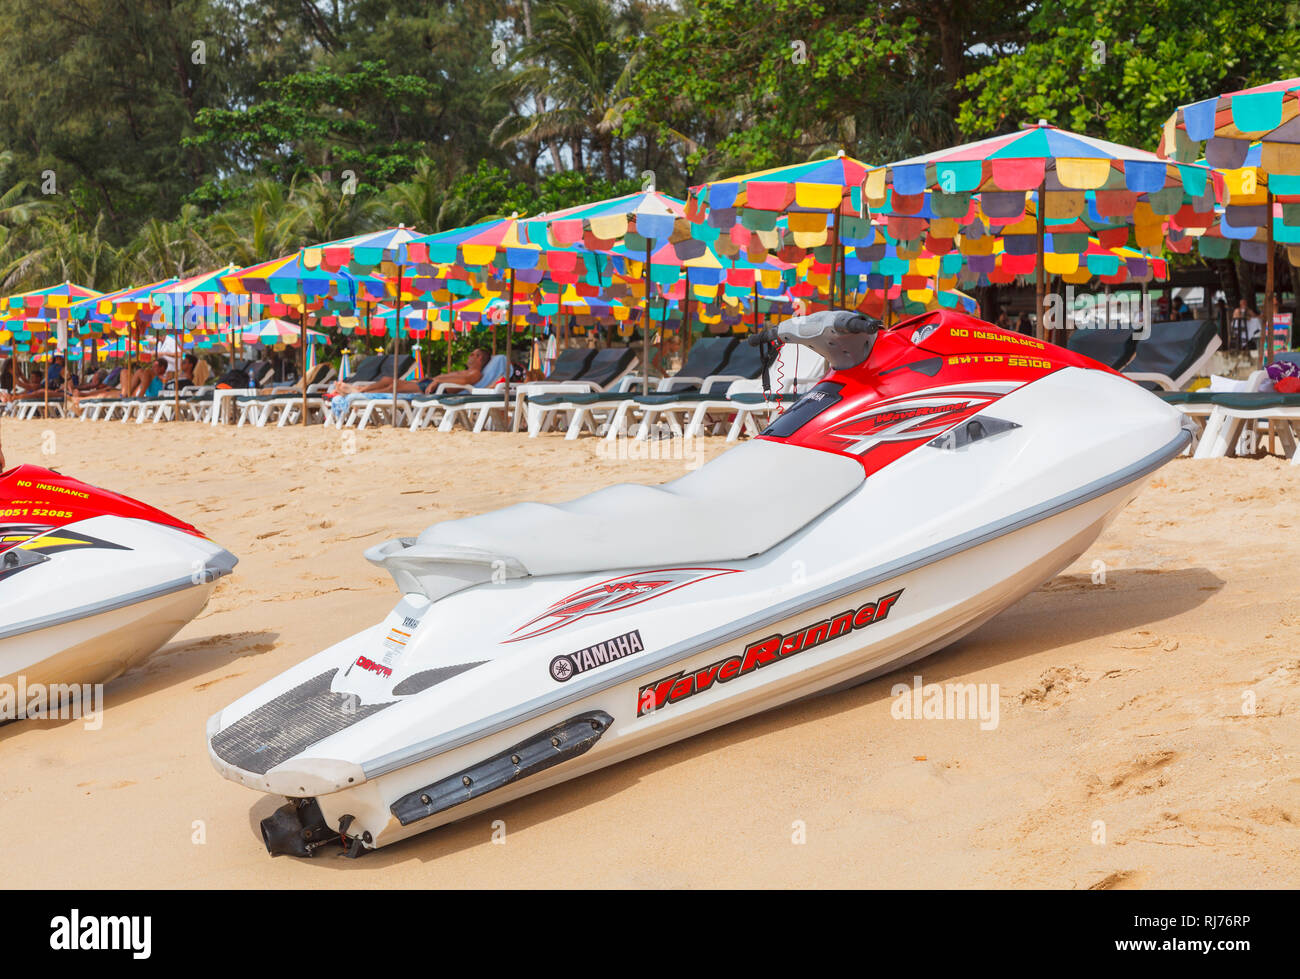 Rot und Weiß Yamaha Waverunner Jetski am Strand vor bunten Sonnenschirme und Liegestühle in Surin Beach, West Coast Pkuket, Thailand Stockfoto